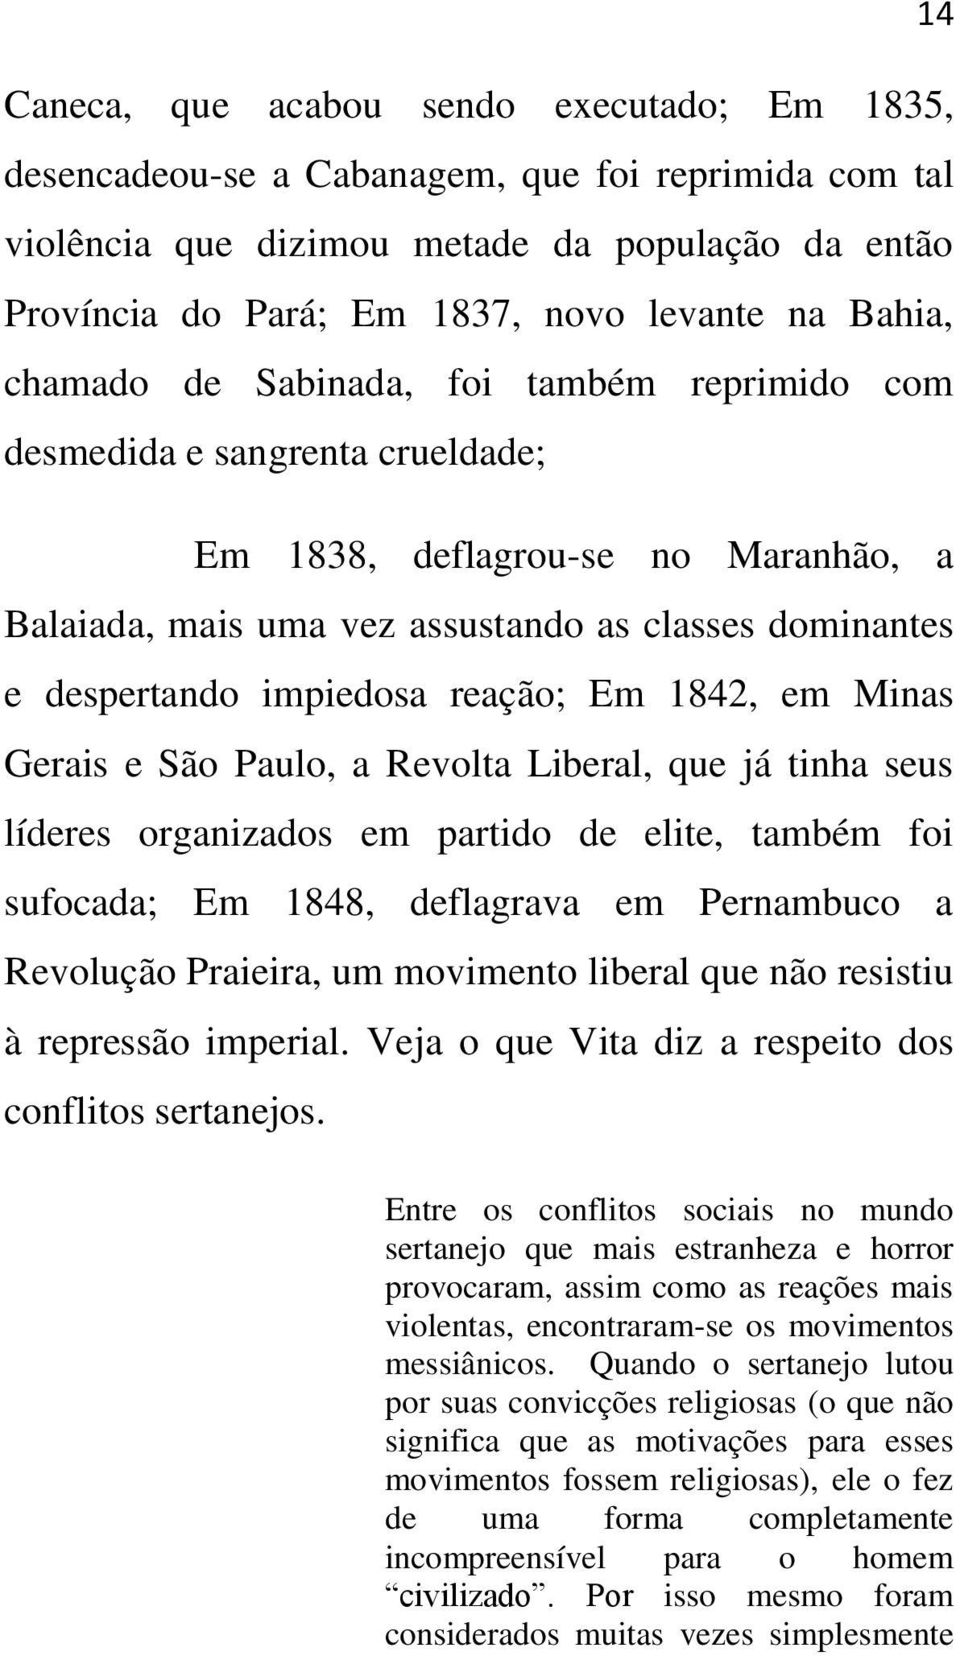 impiedosa reação; Em 1842, em Minas Gerais e São Paulo, a Revolta Liberal, que já tinha seus líderes organizados em partido de elite, também foi sufocada; Em 1848, deflagrava em Pernambuco a